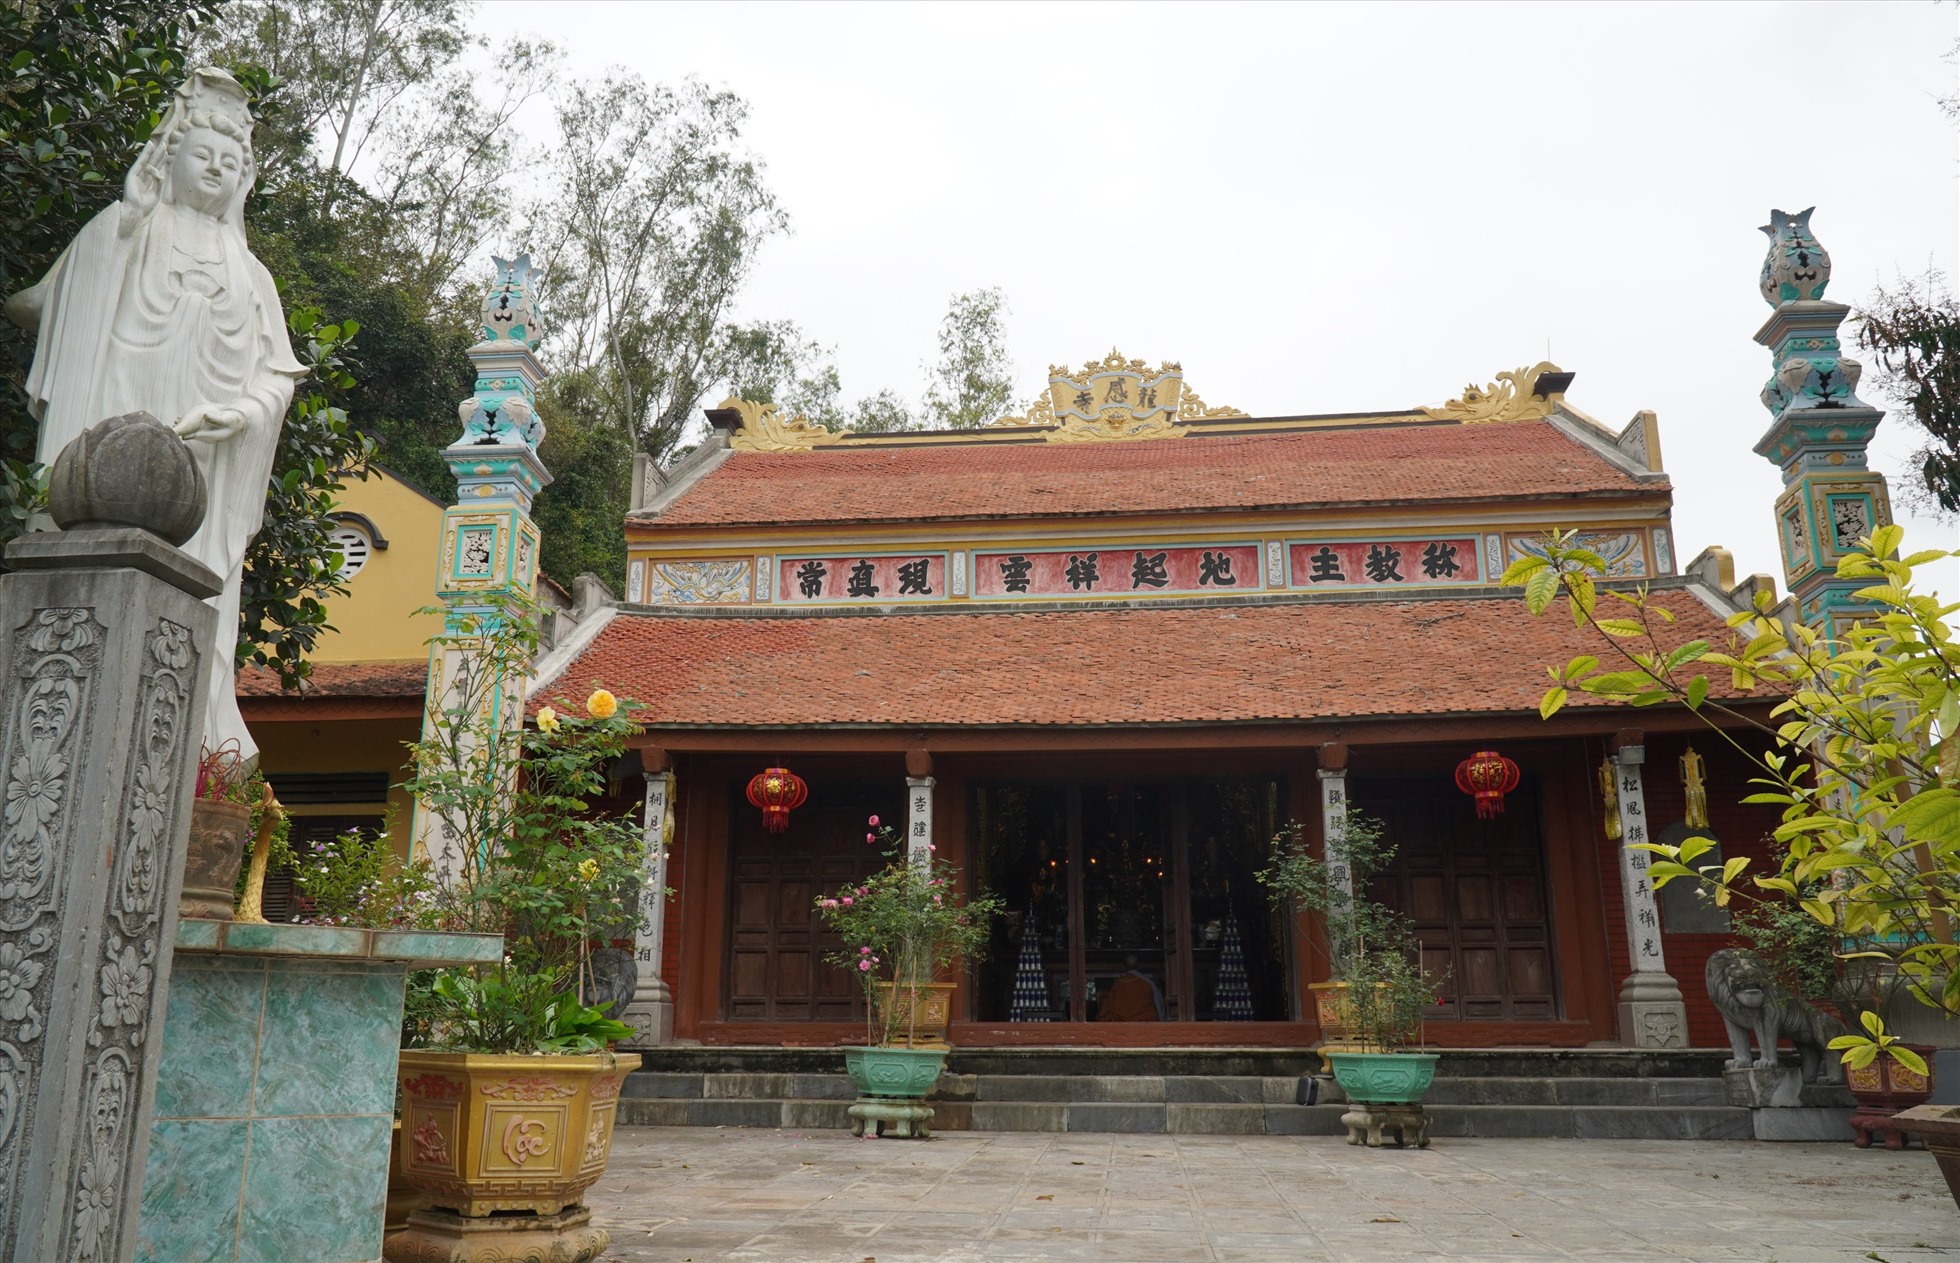 Theo sư thầy Thích Đàm Quang - trụ trì chùa Long Cảm cho biết, từ các tài liệu lịch sử lược ghi, ngôi chùa này được xây dựng vào năm Thuận Thiên thứ 11 (1020), dưới thời vua Lý Thái Tổ. Ảnh: Quách Du